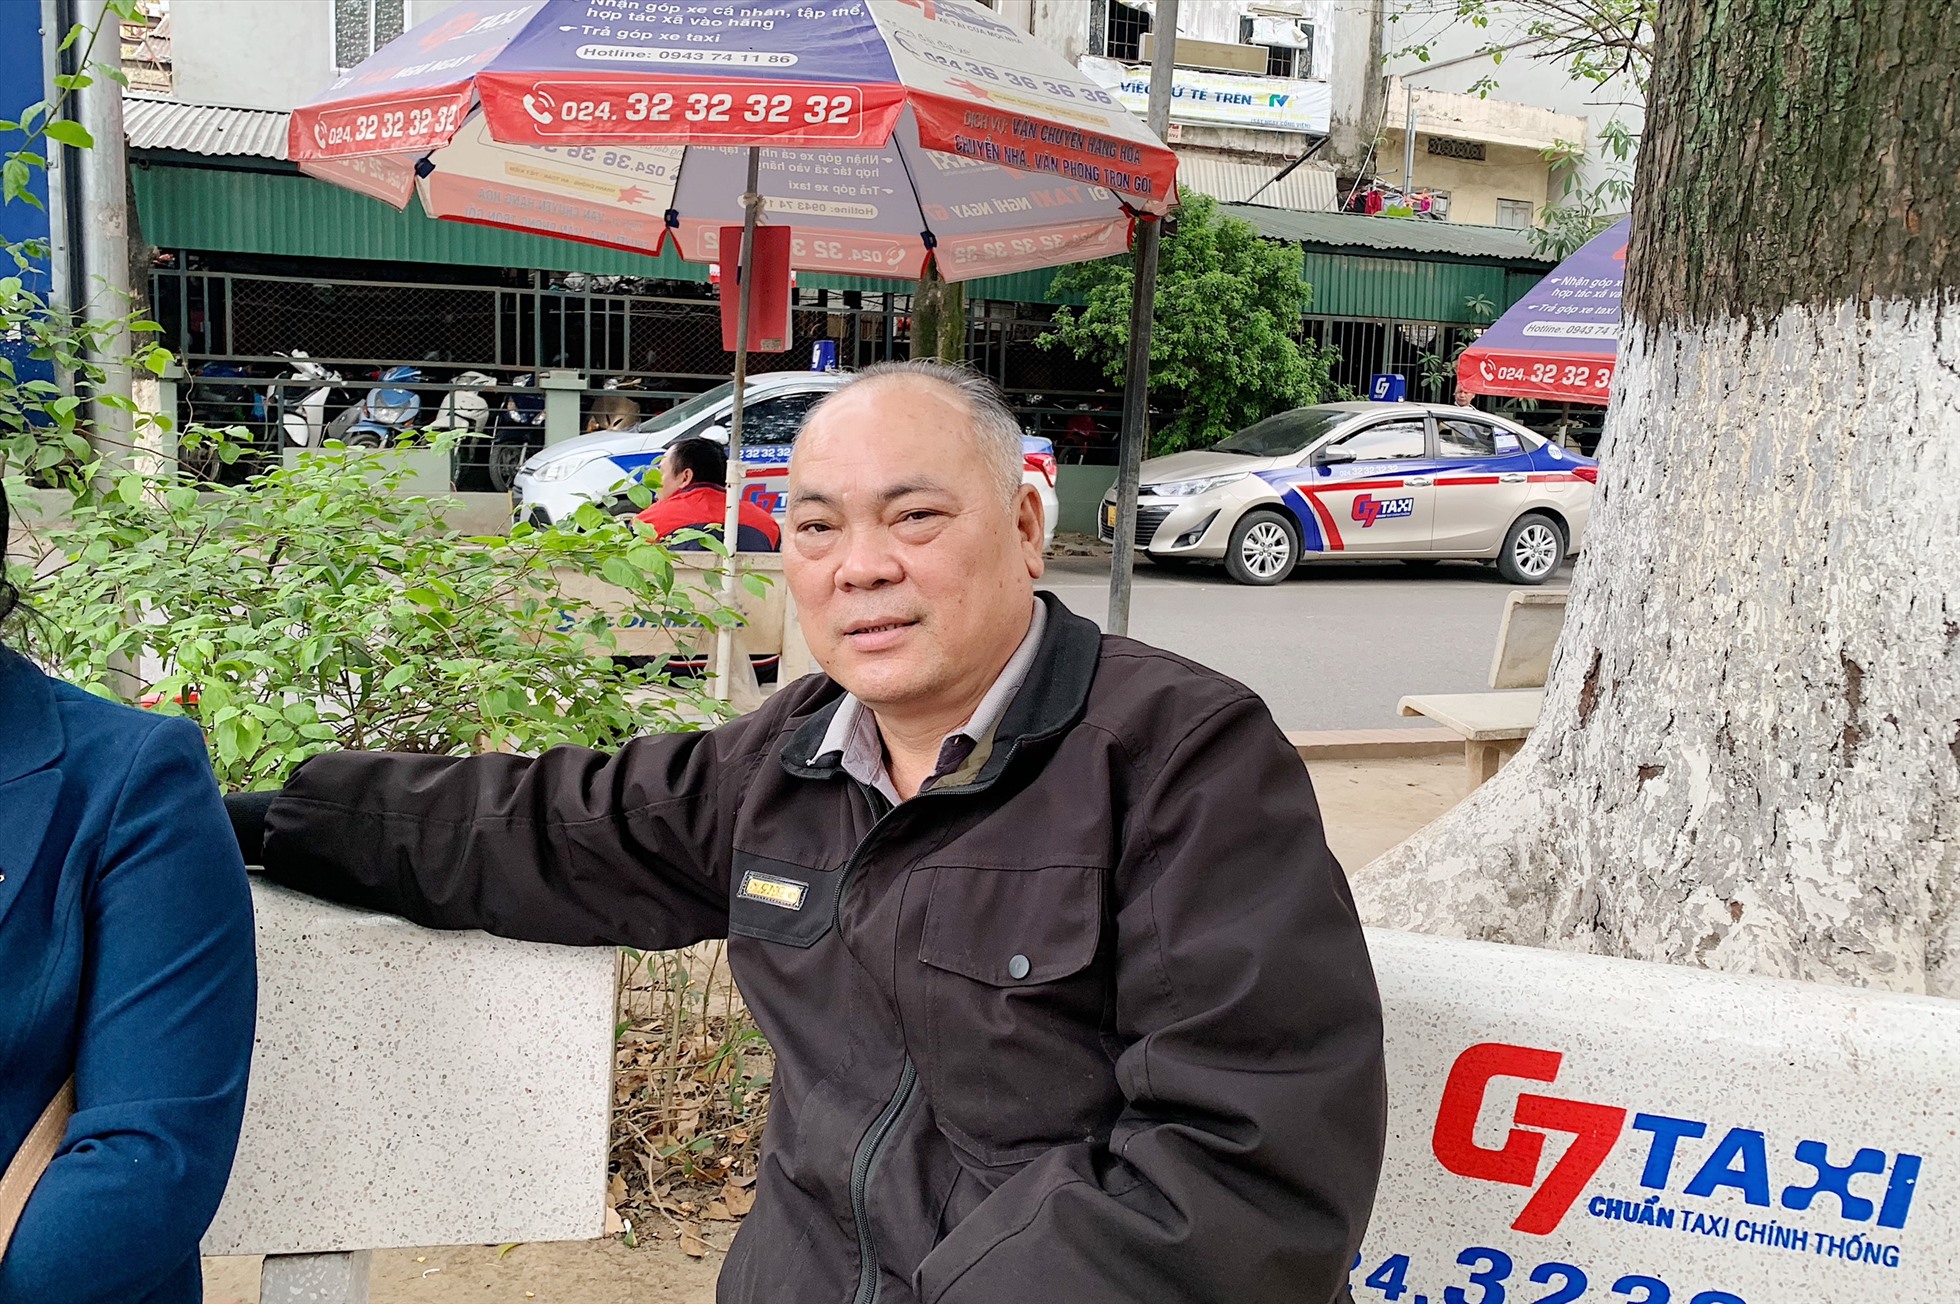 Ông Lò Văn Trọng chia sẻ về thường xuyên bị taxi, xe ôm mời gọi đi dù không có nhu cầu.